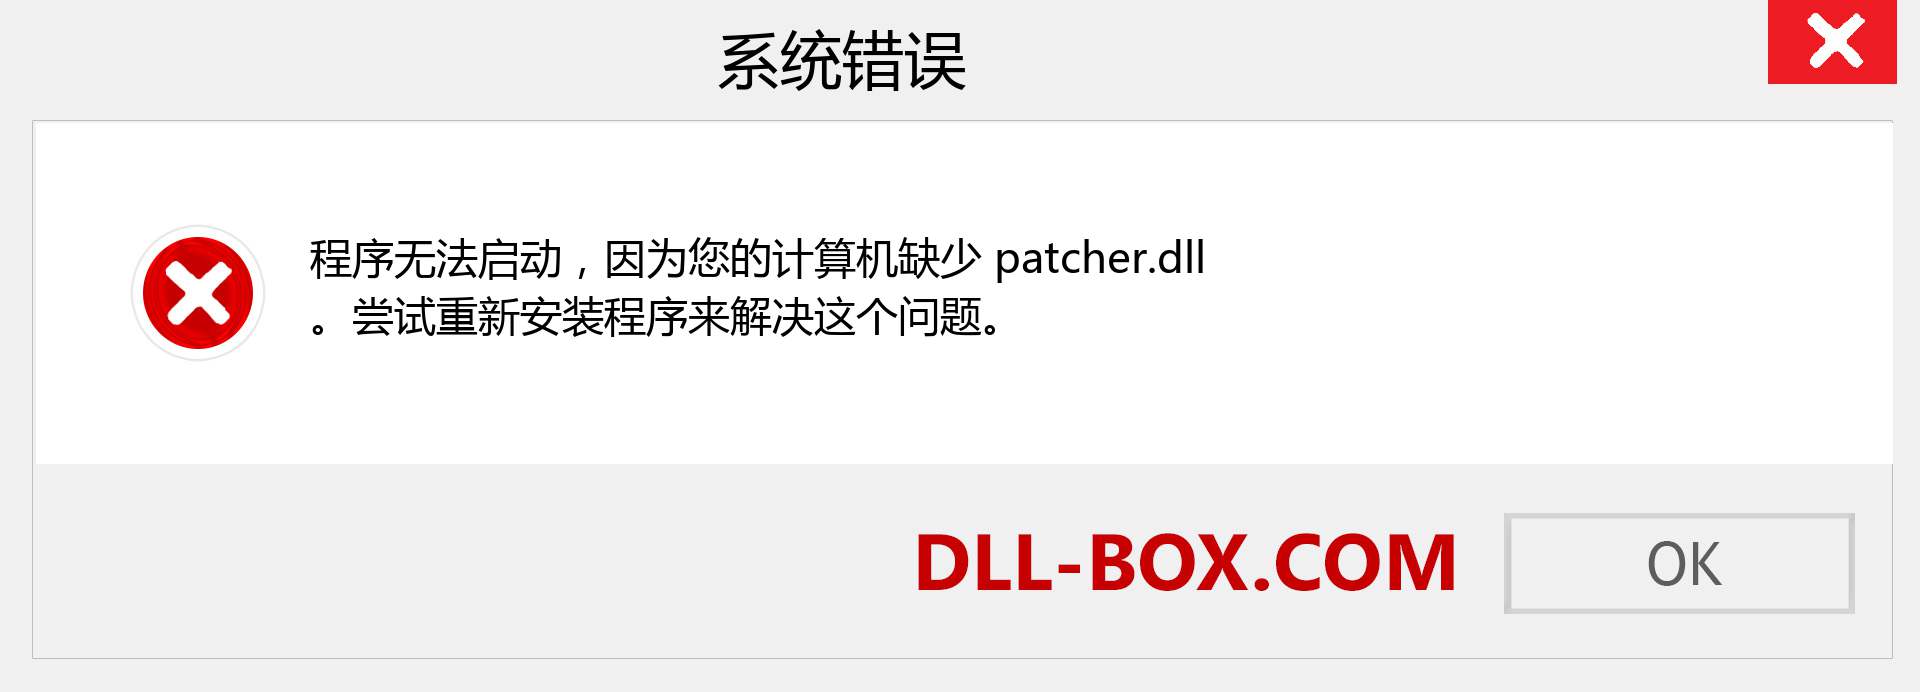 patcher.dll 文件丢失？。 适用于 Windows 7、8、10 的下载 - 修复 Windows、照片、图像上的 patcher dll 丢失错误